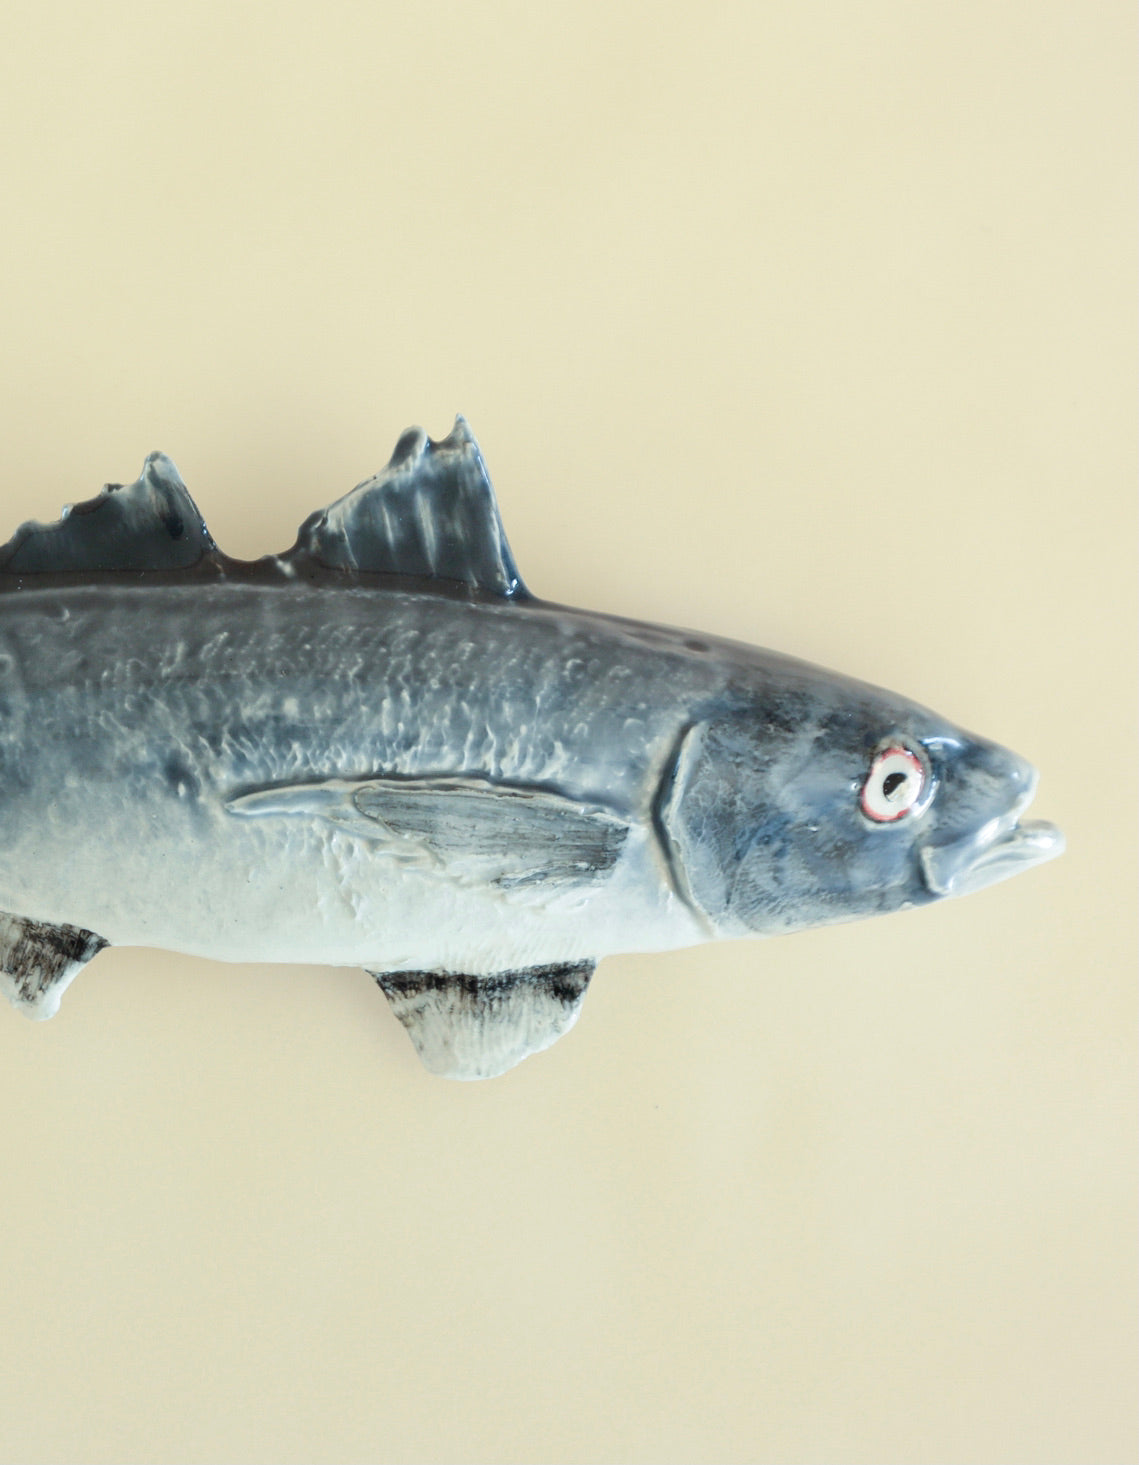 Portuguese Ceramic Fish